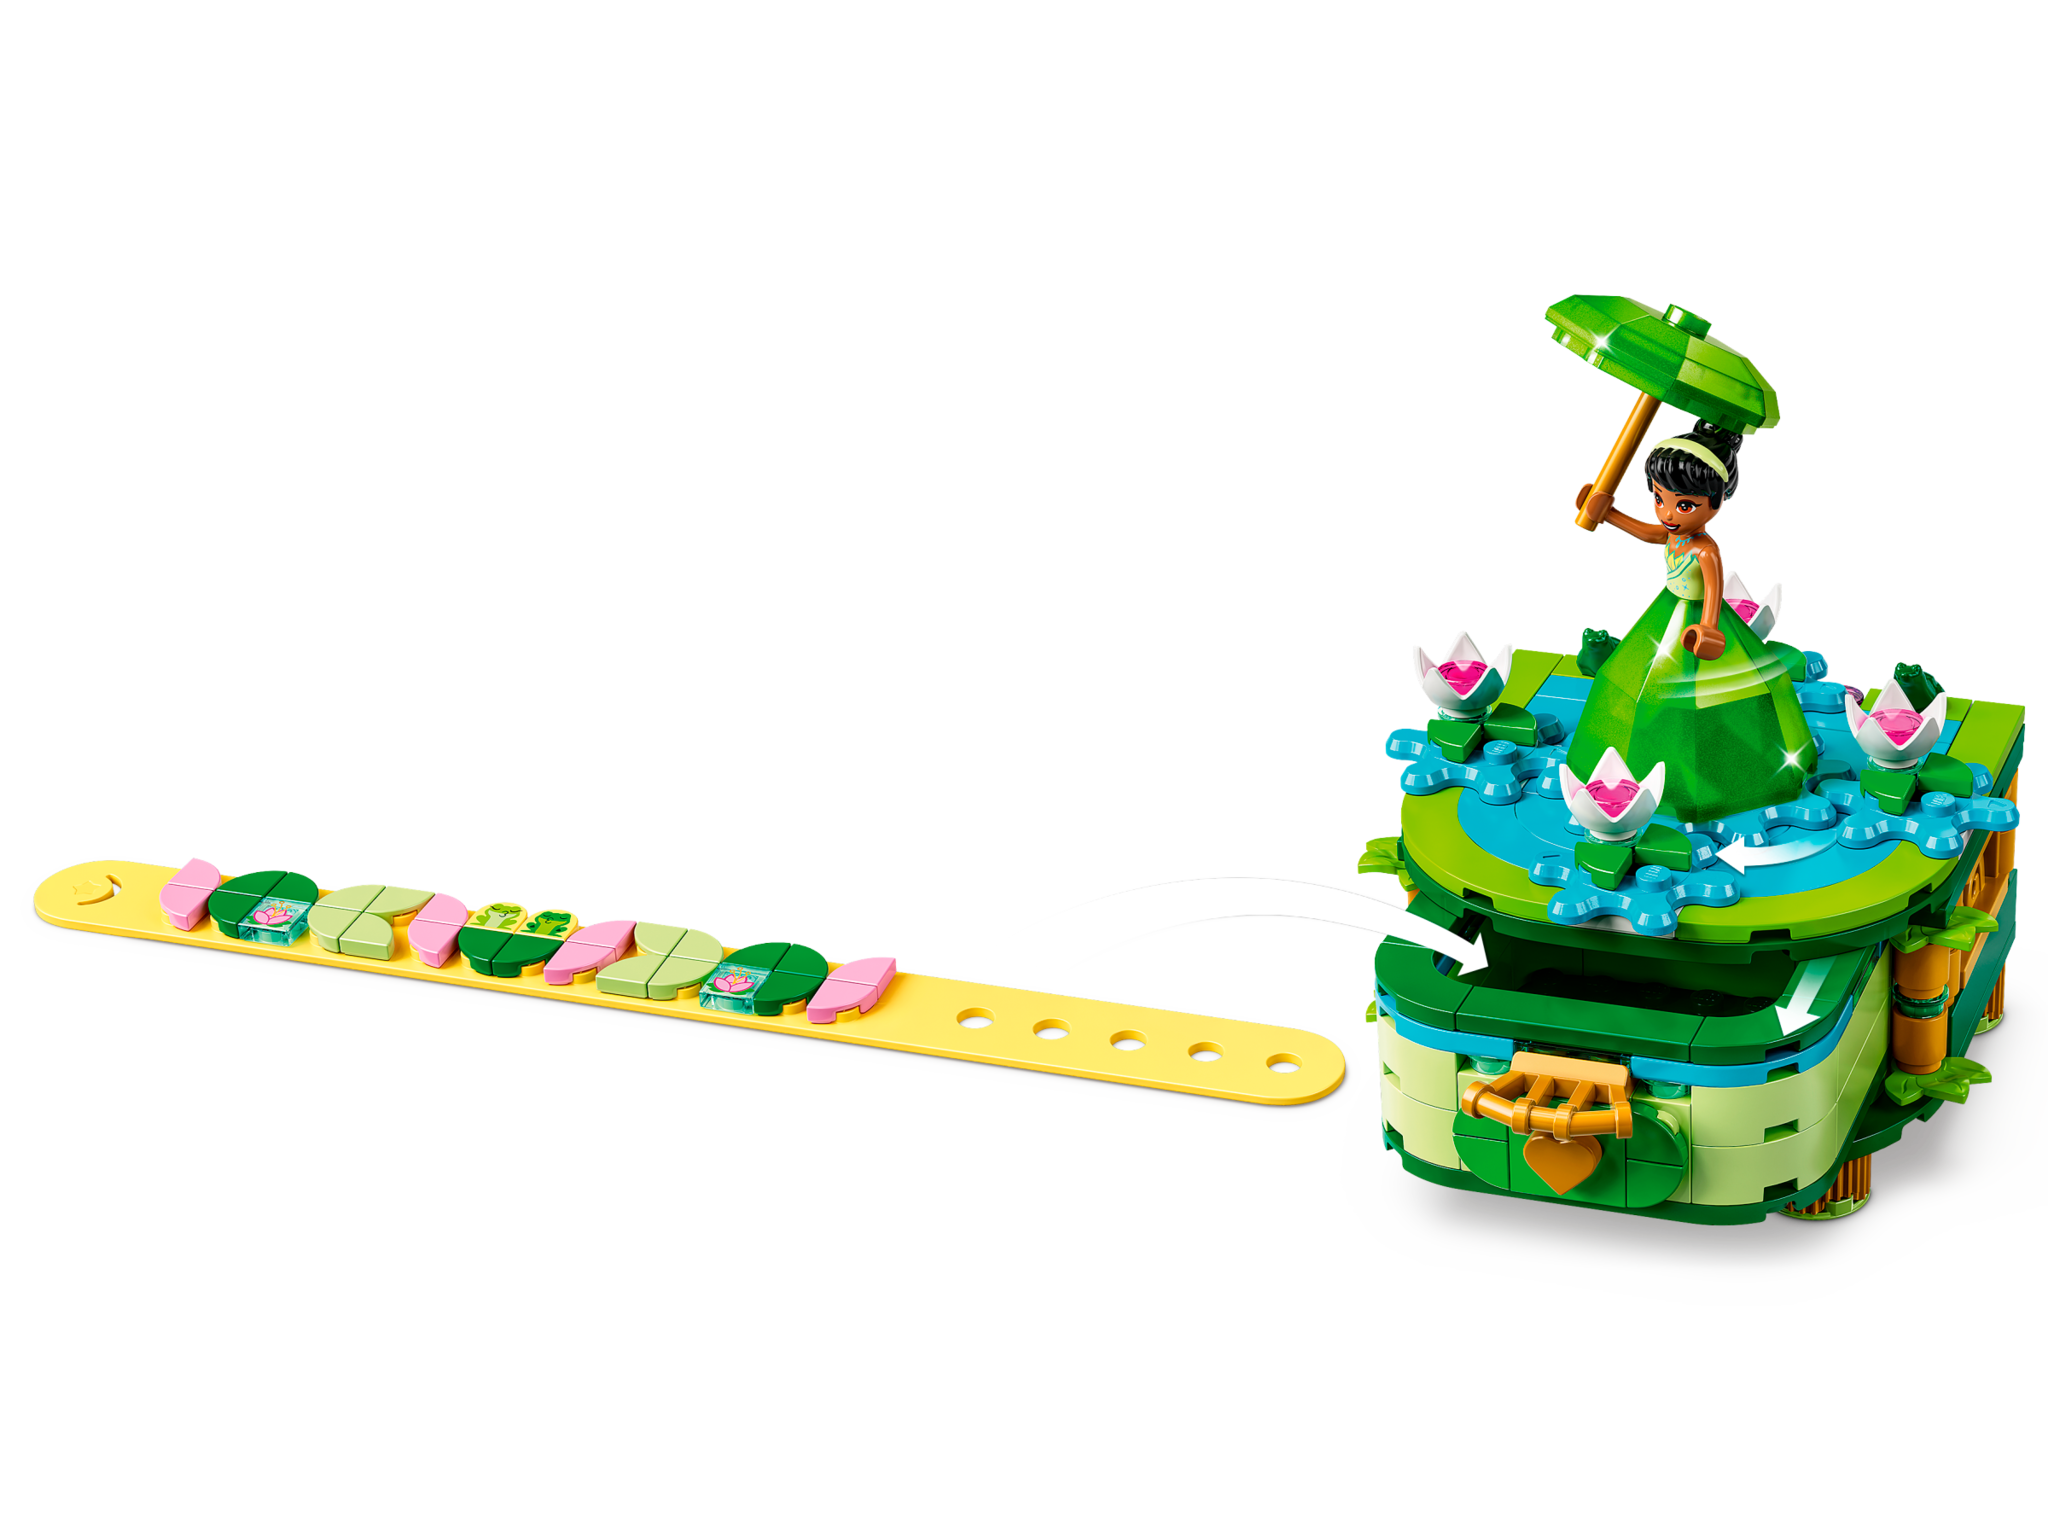 Lego Lego 43203 Disney - Les créations enchantées d'Aurore, Mérida et Tiana